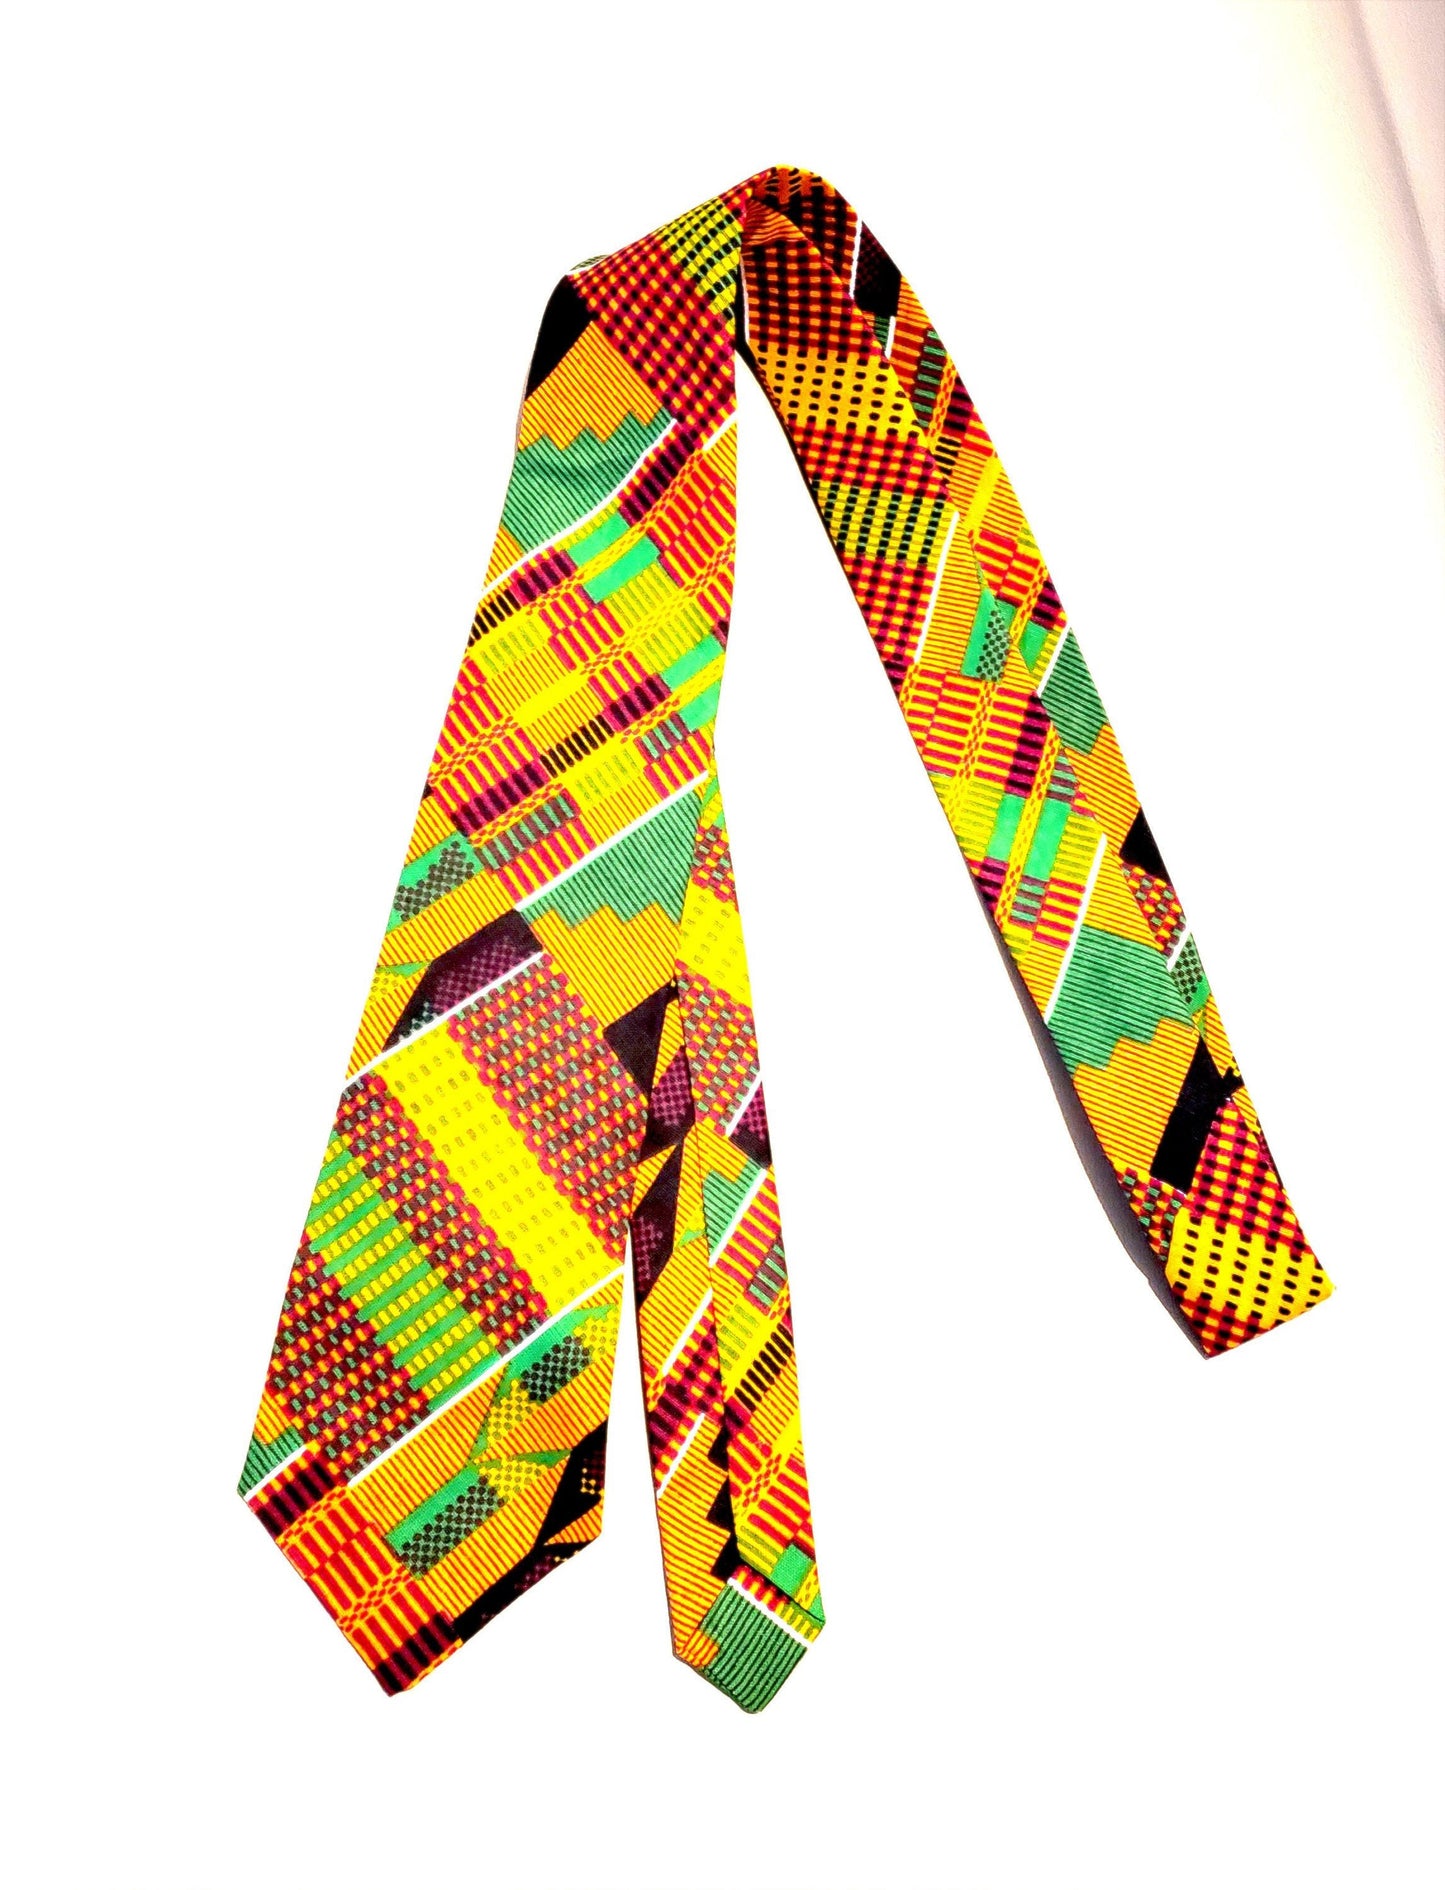 Tie and bow ties kente african Print